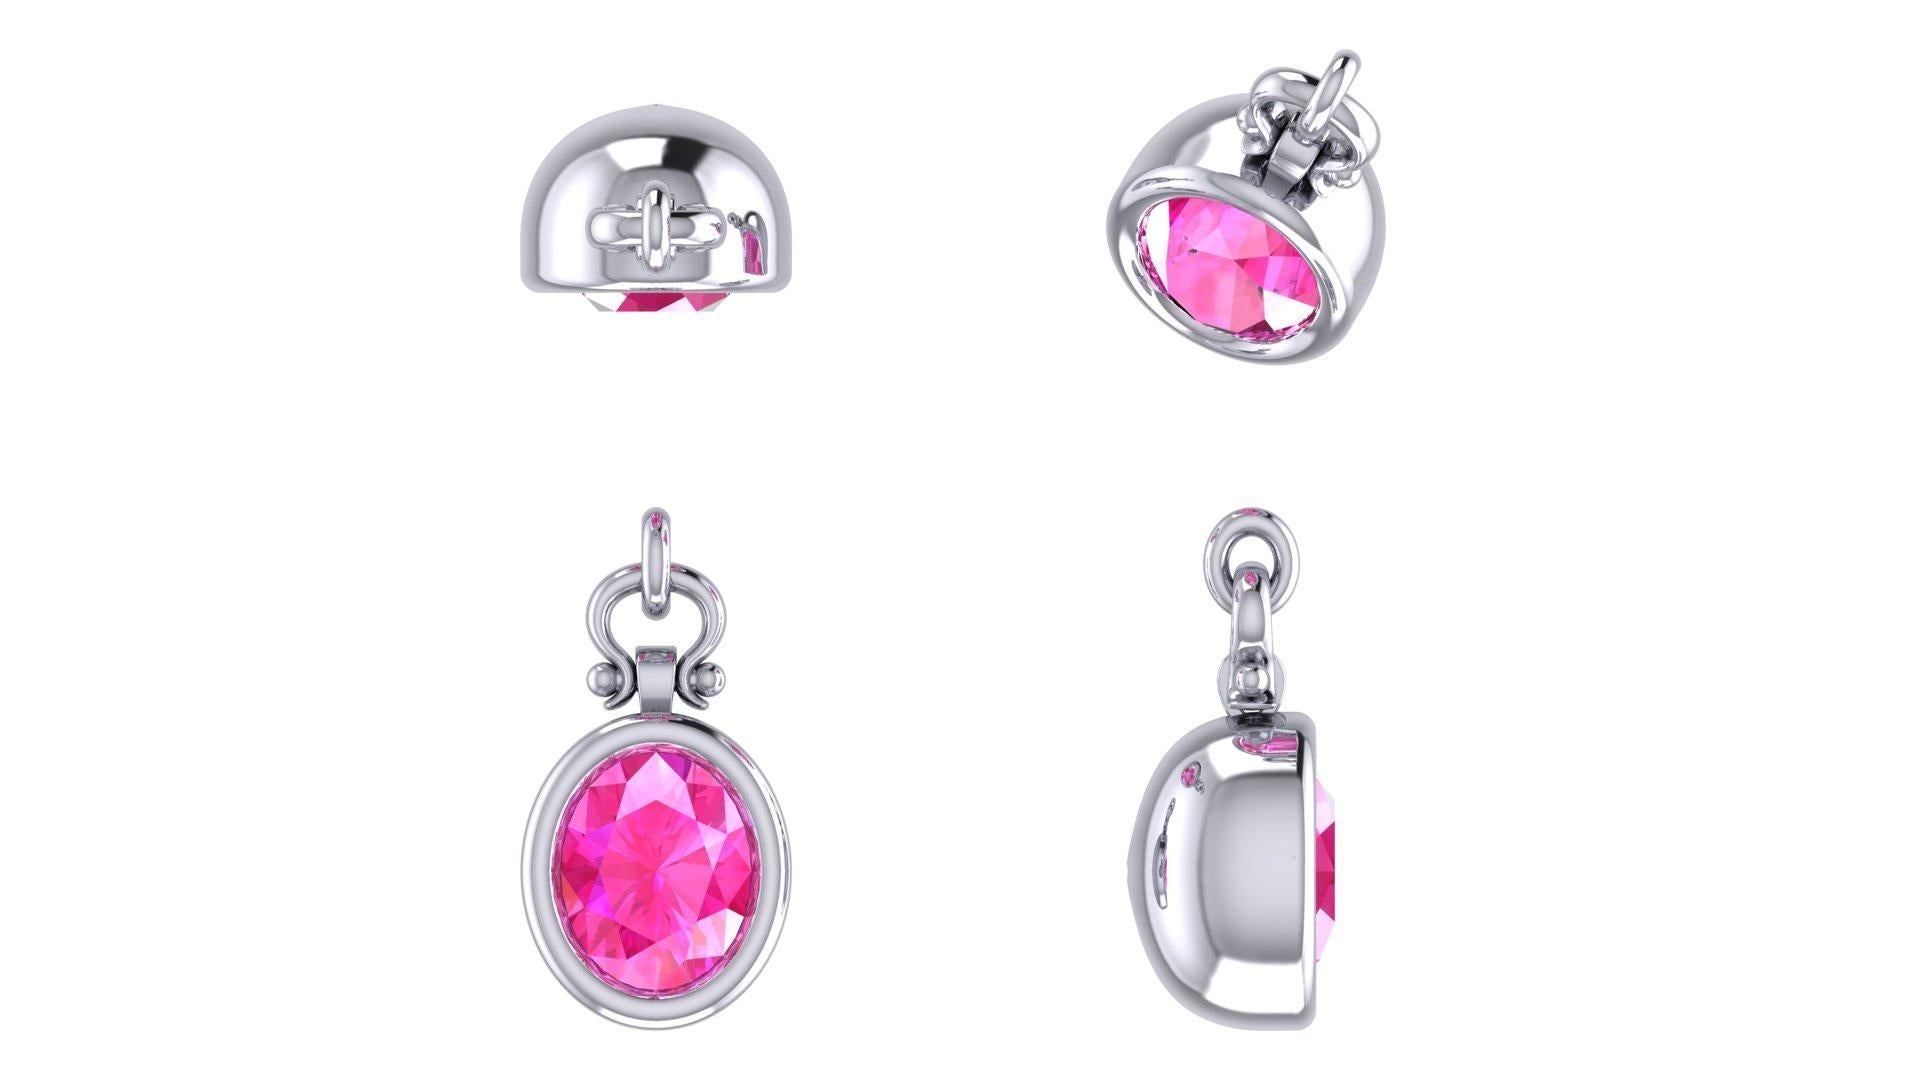 Berberyn Certified 3.12 Carat Oval Cut Pink Sapphire Pendant Necklace in 18K For Sale 3